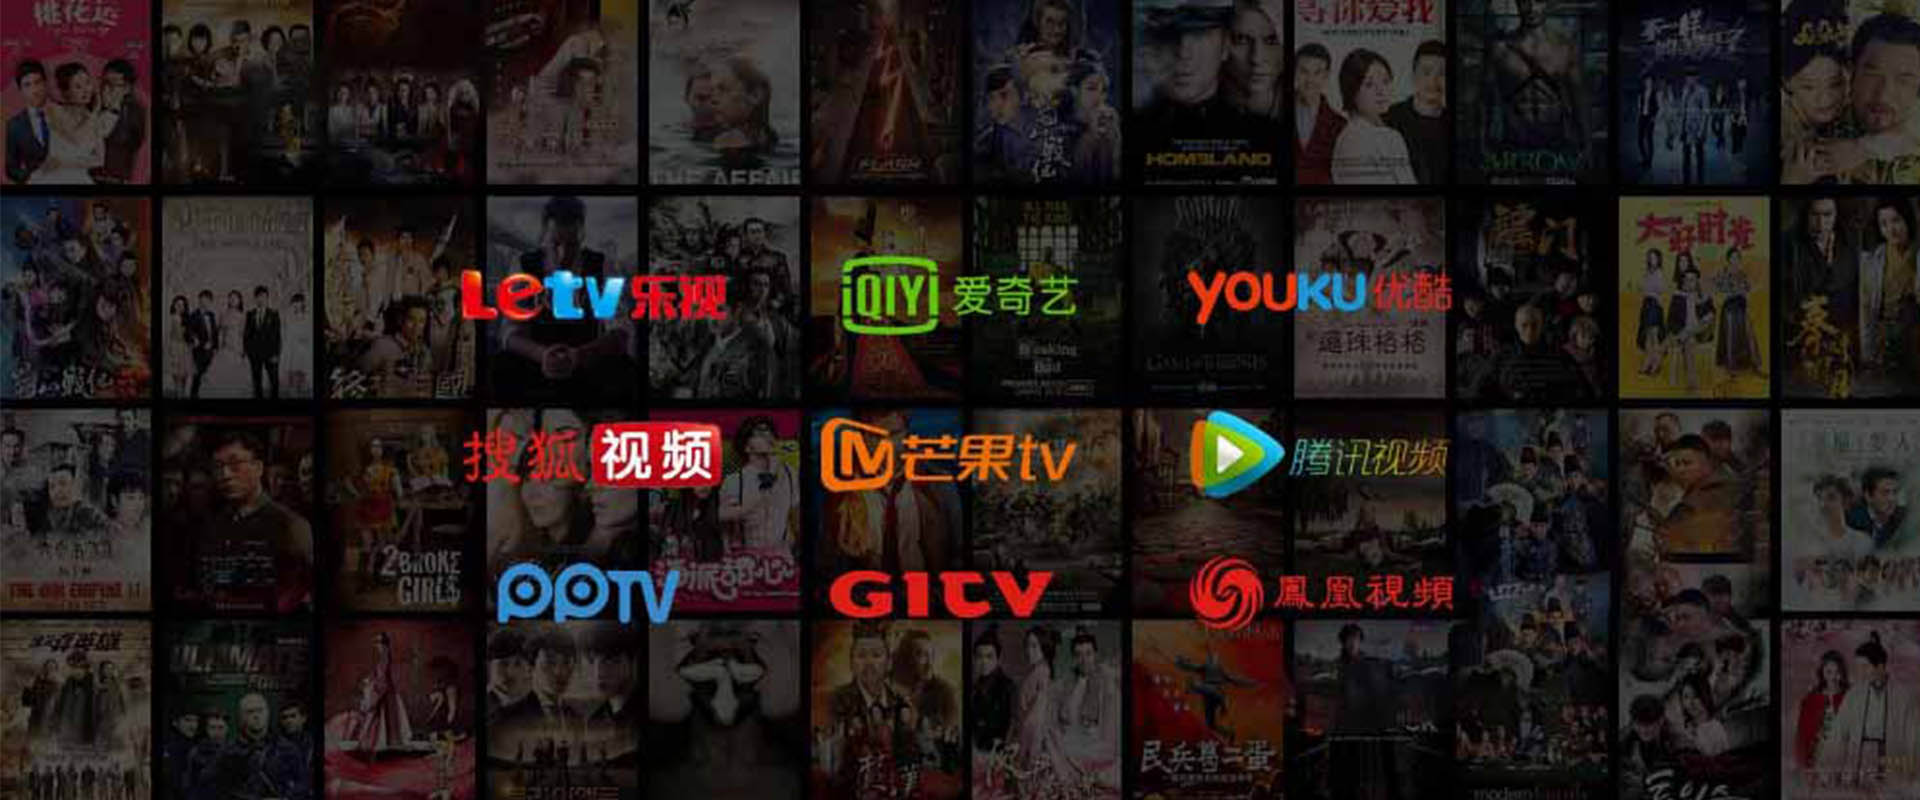 Ubox Pro Kanalliste Tausende von Kanälen und unzählige TV-Sendungen